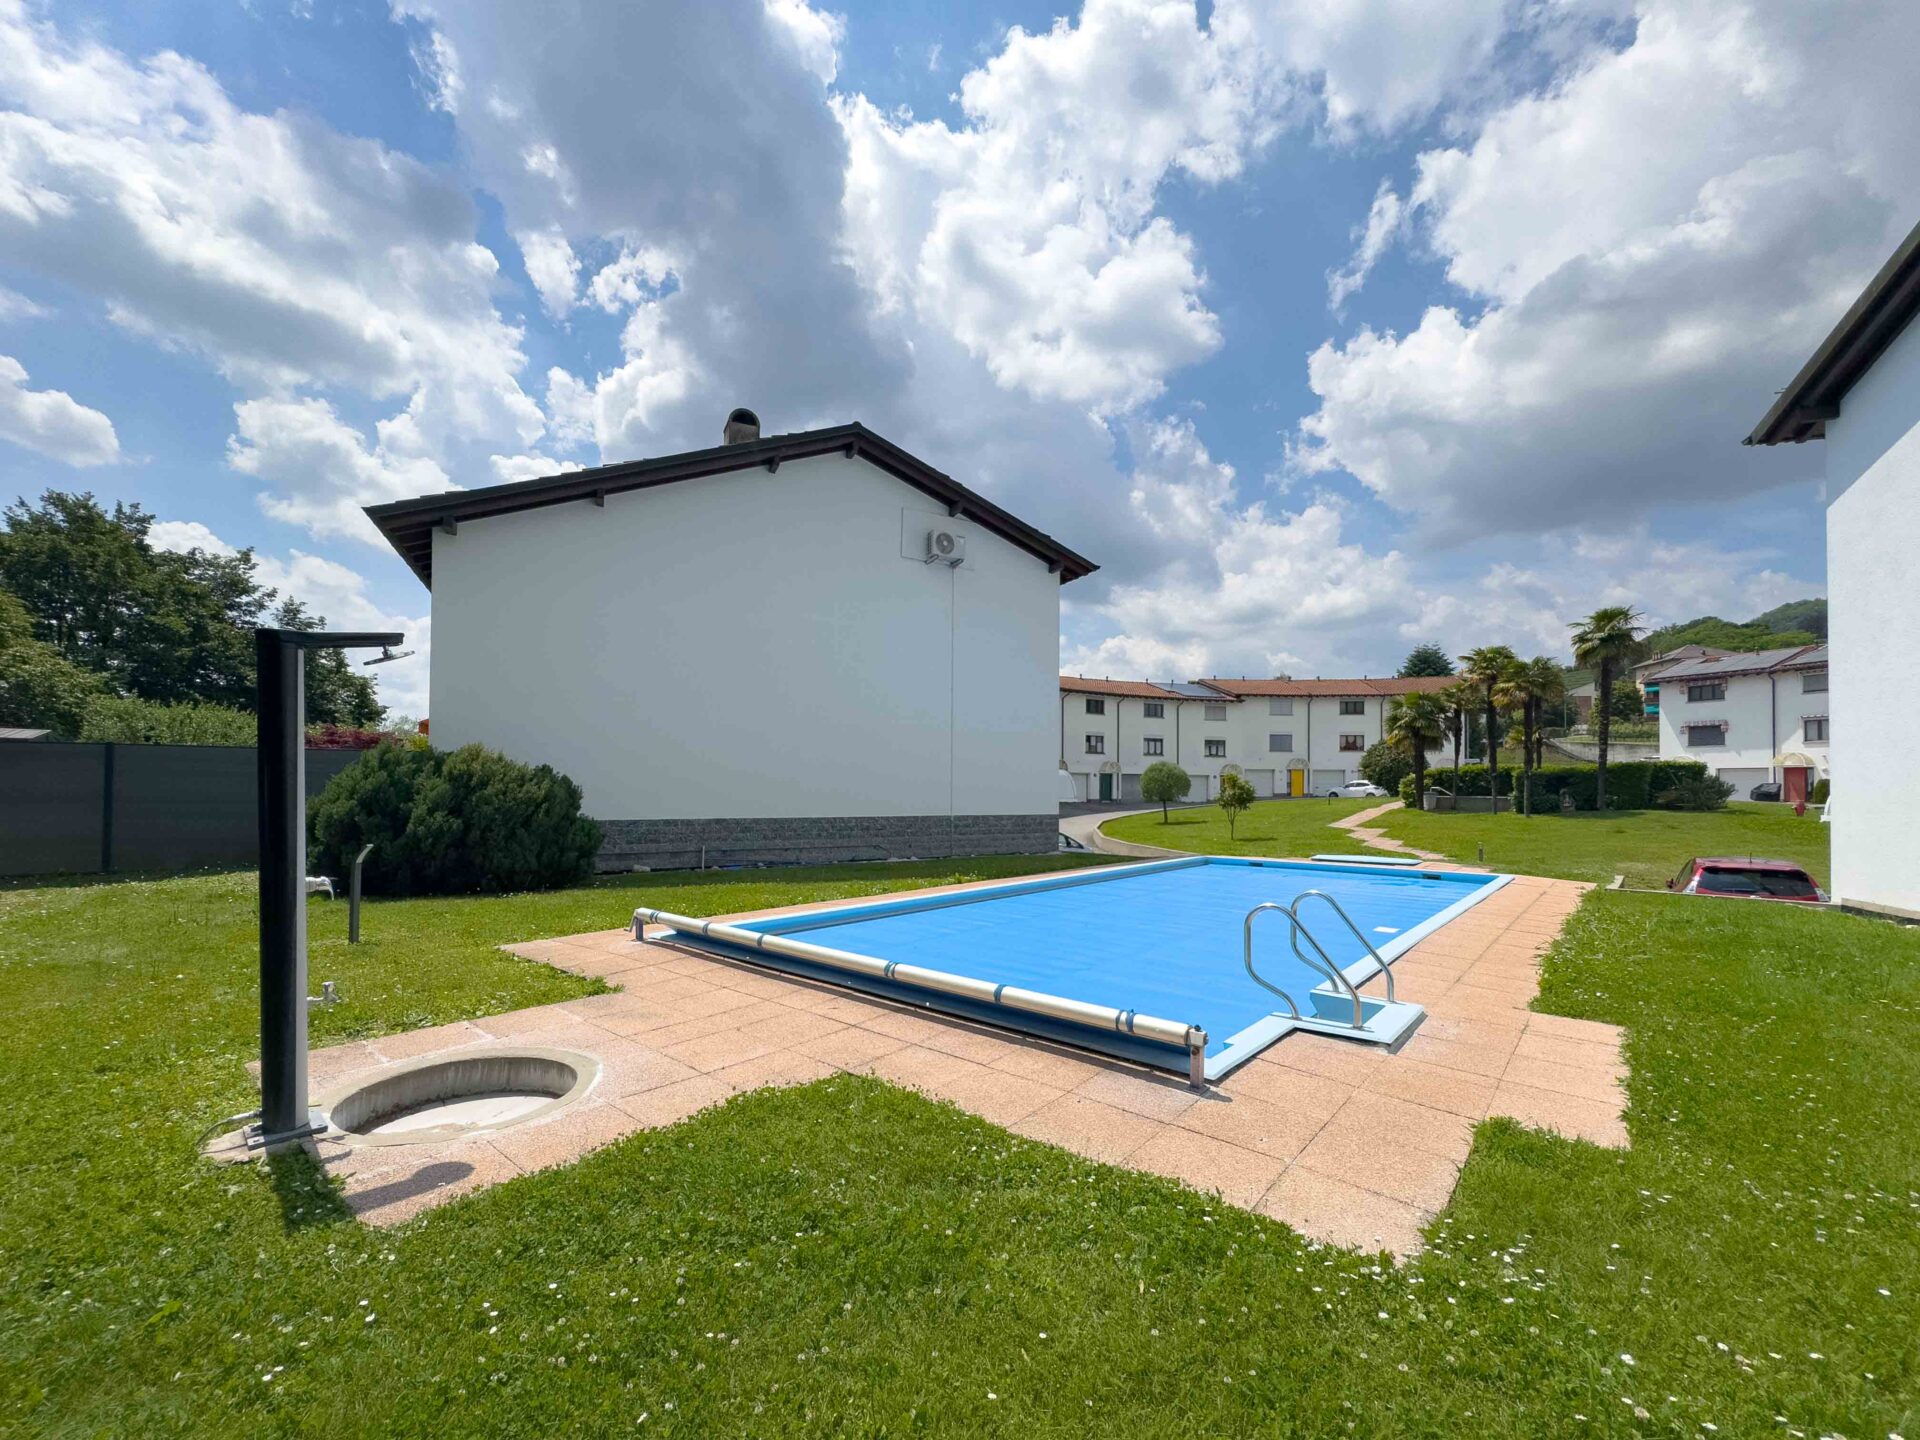 Villetta a schiera in complesso residenziale con piscina condominiale in vendita a Rancate